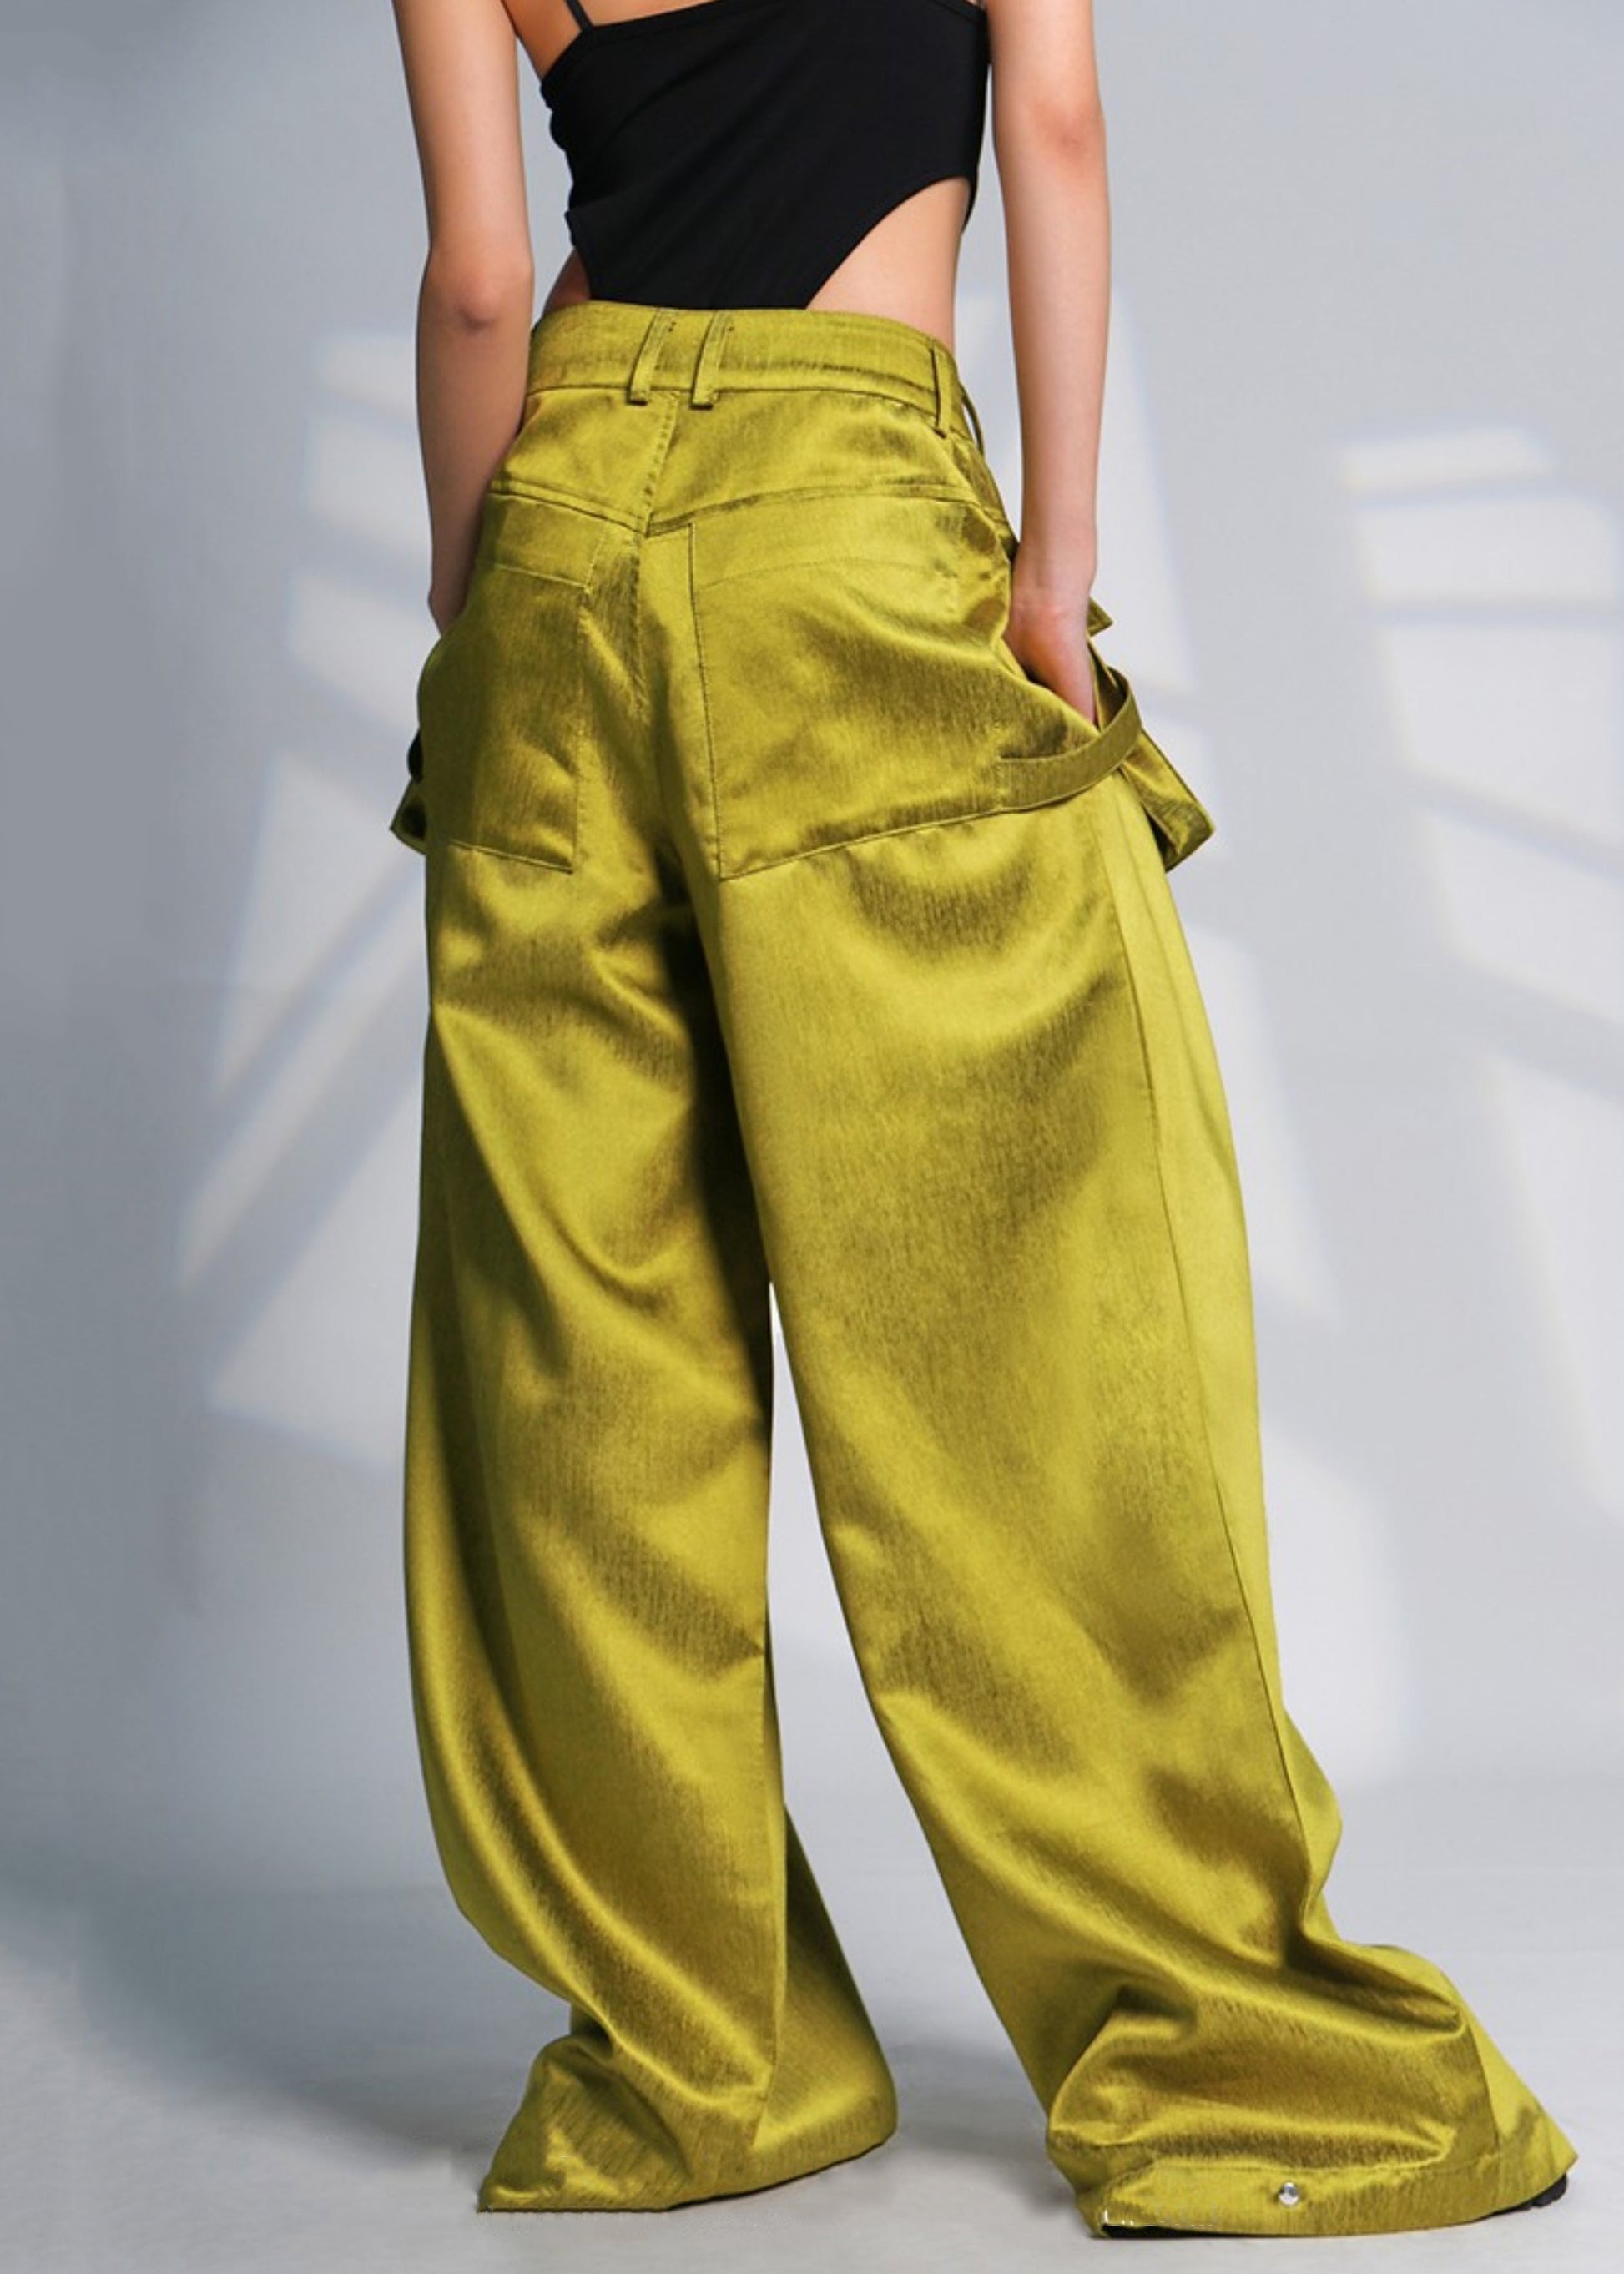 New Green Pockets High Waist Cotton Wide Leg Pants Summer Ada Fashion